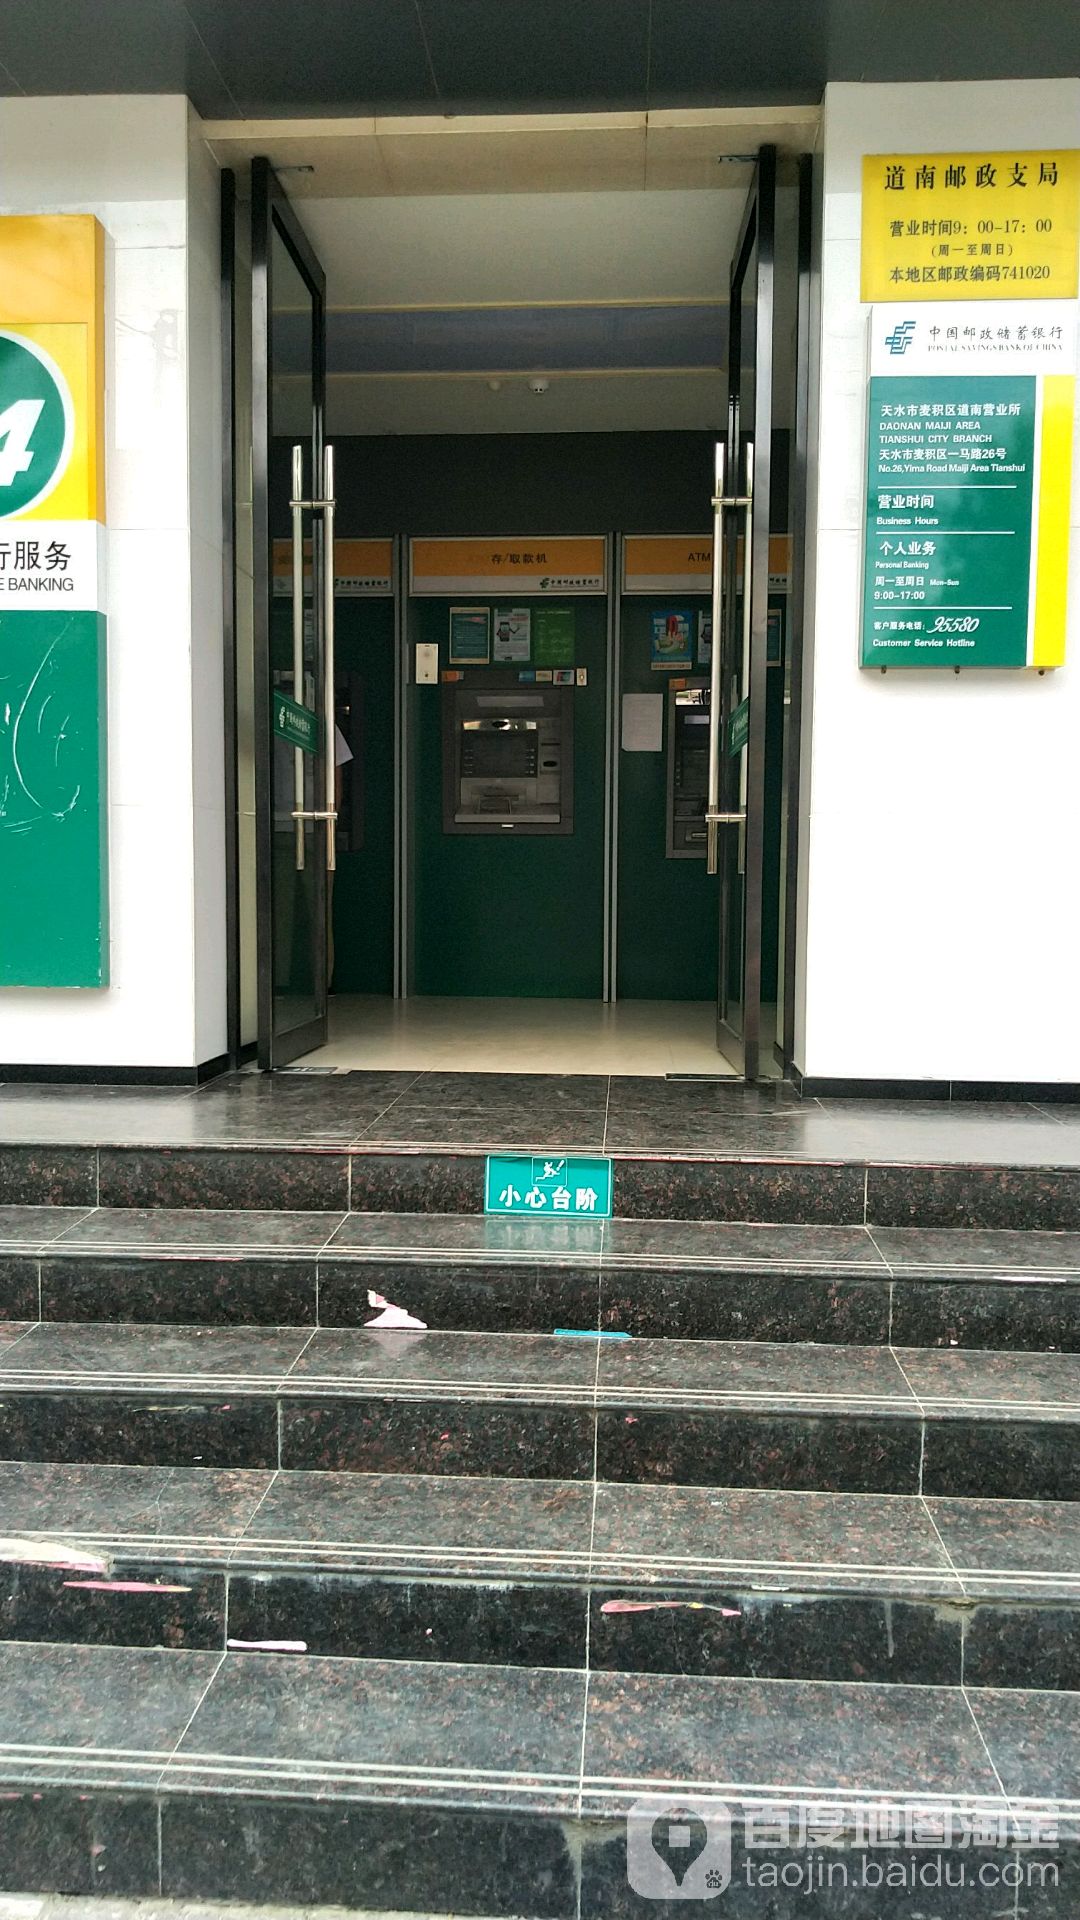 中国邮政储蓄银行24小时自助银行(道南支行)